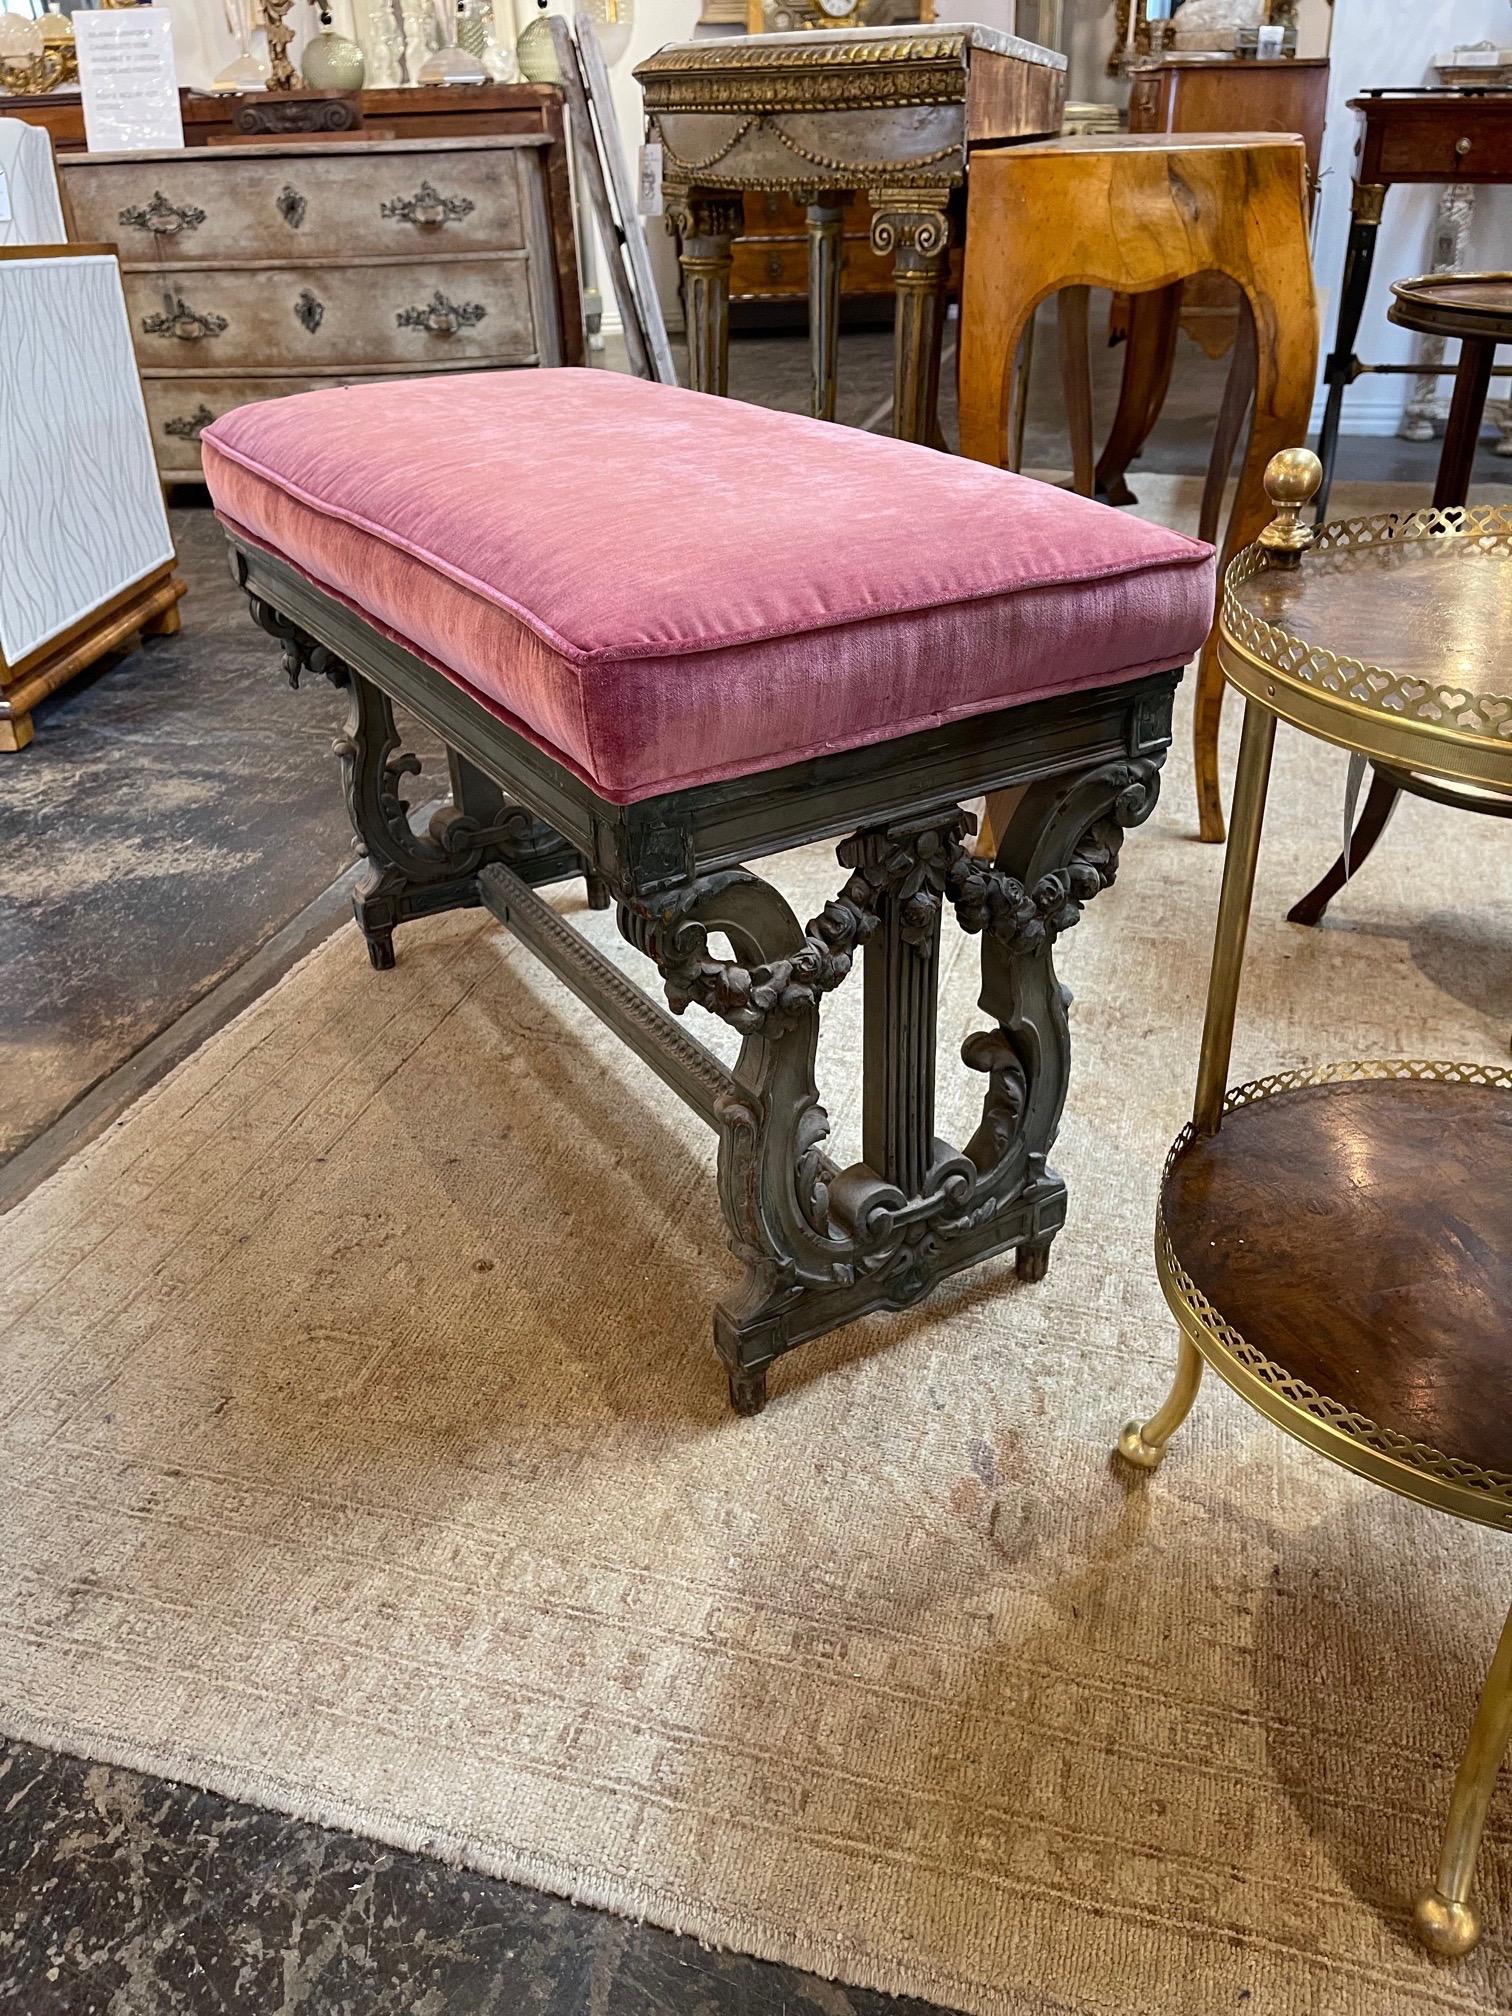 Joli banc français de style Louis XVI sculpté et peint. Jolie sculpture et tapissée d'un tissu en velours rose. Idéal pour un vestiaire de femmes !